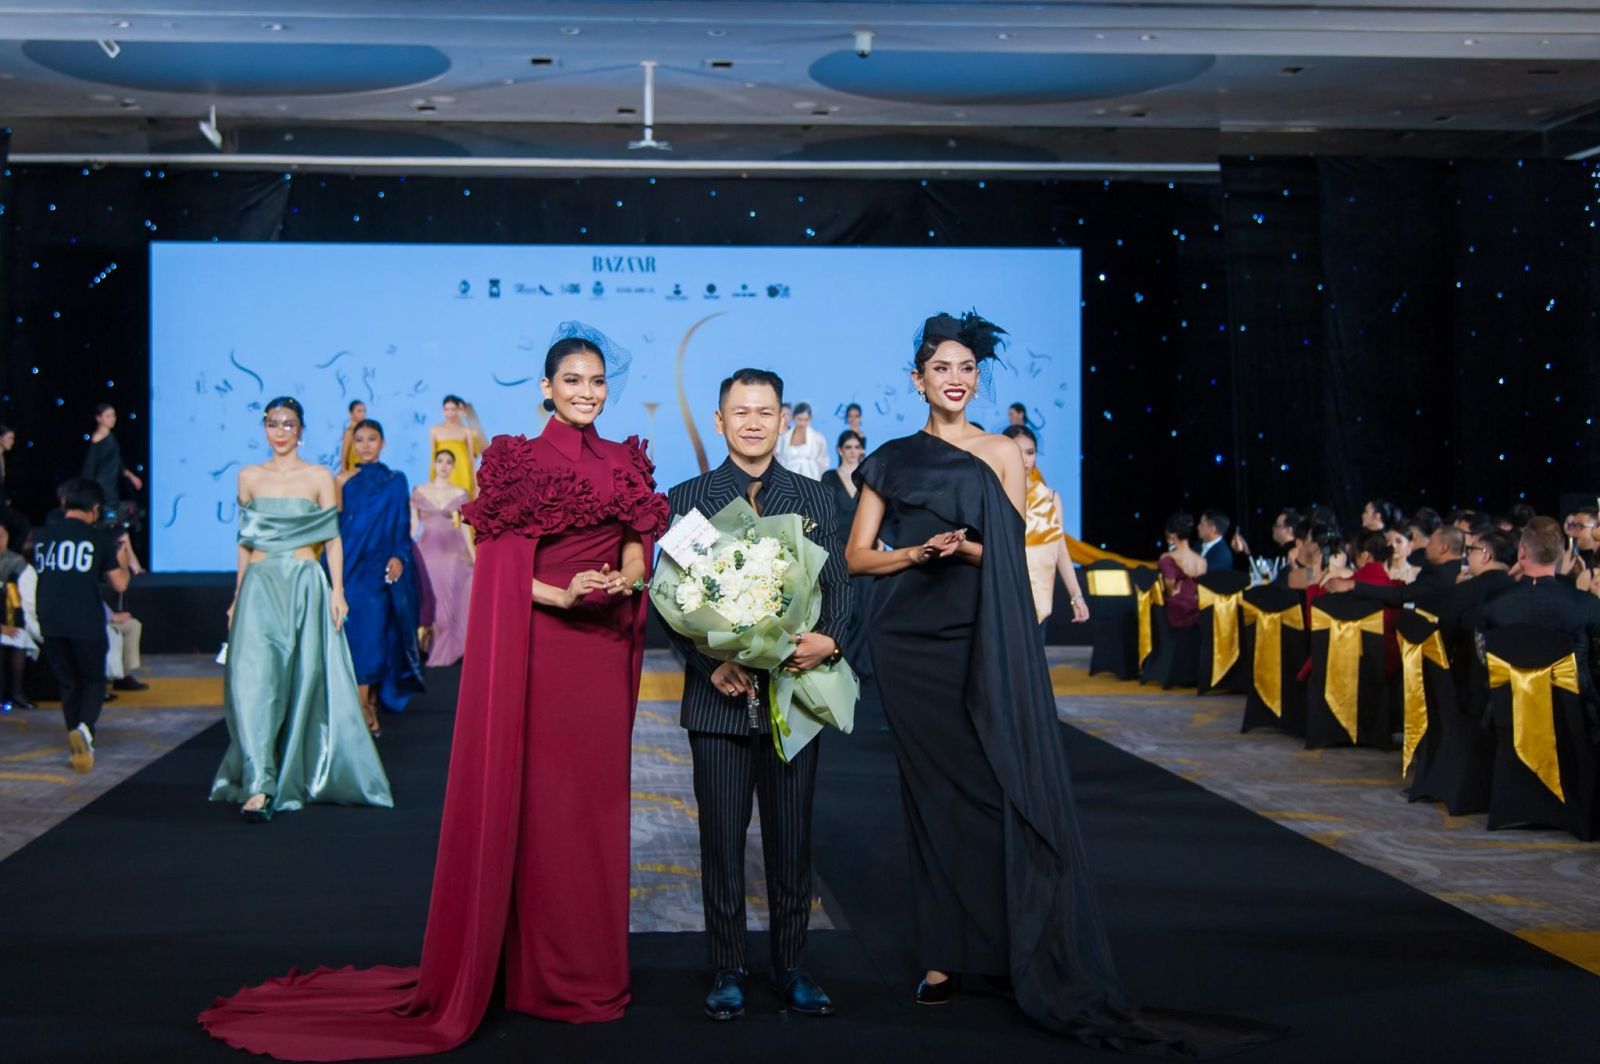 Thương hiệu MUSE by RMH (Bazaar Việt Nam bảo trợ truyền thông) ra mắt tại sự kiện và công bố ứng dụng công nghệ NFT cho các thiết kế thời trang số)